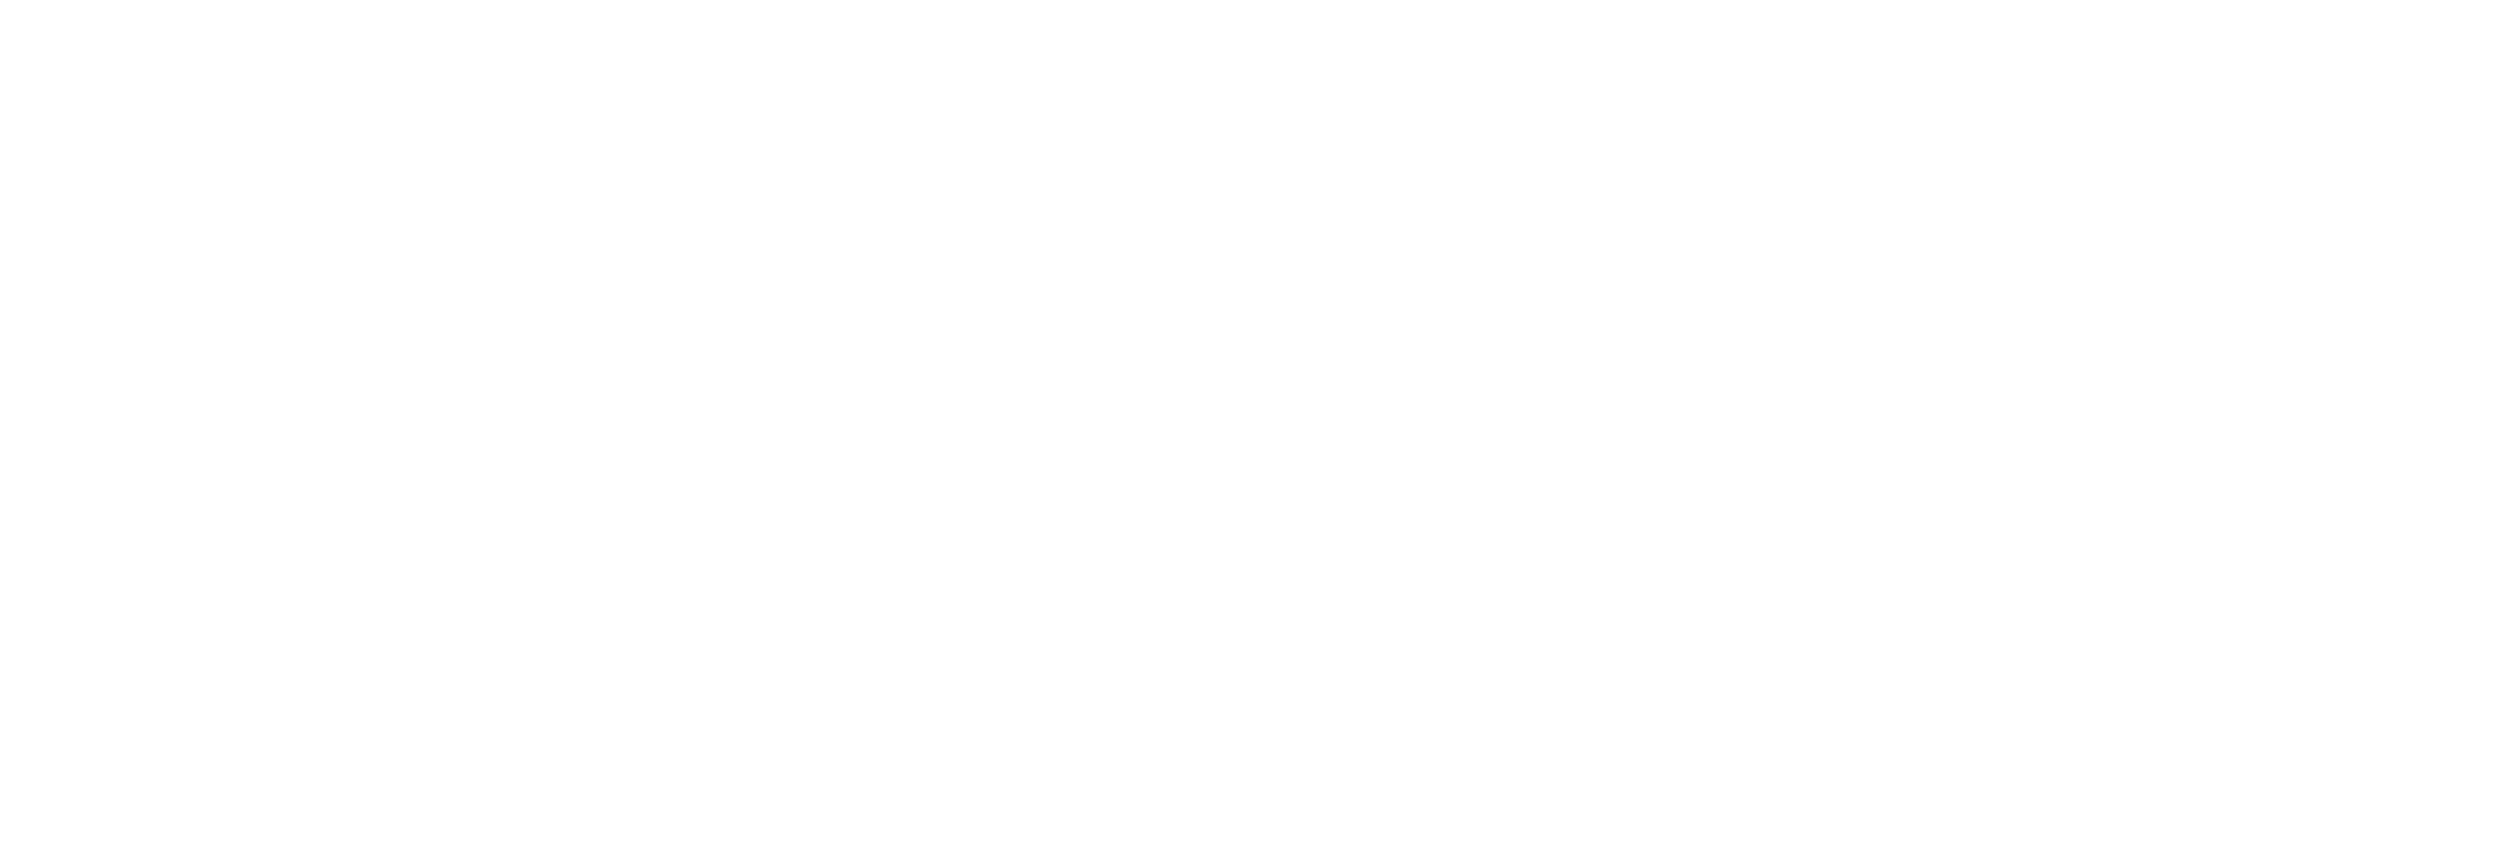 Sullivan's Ridge logo white